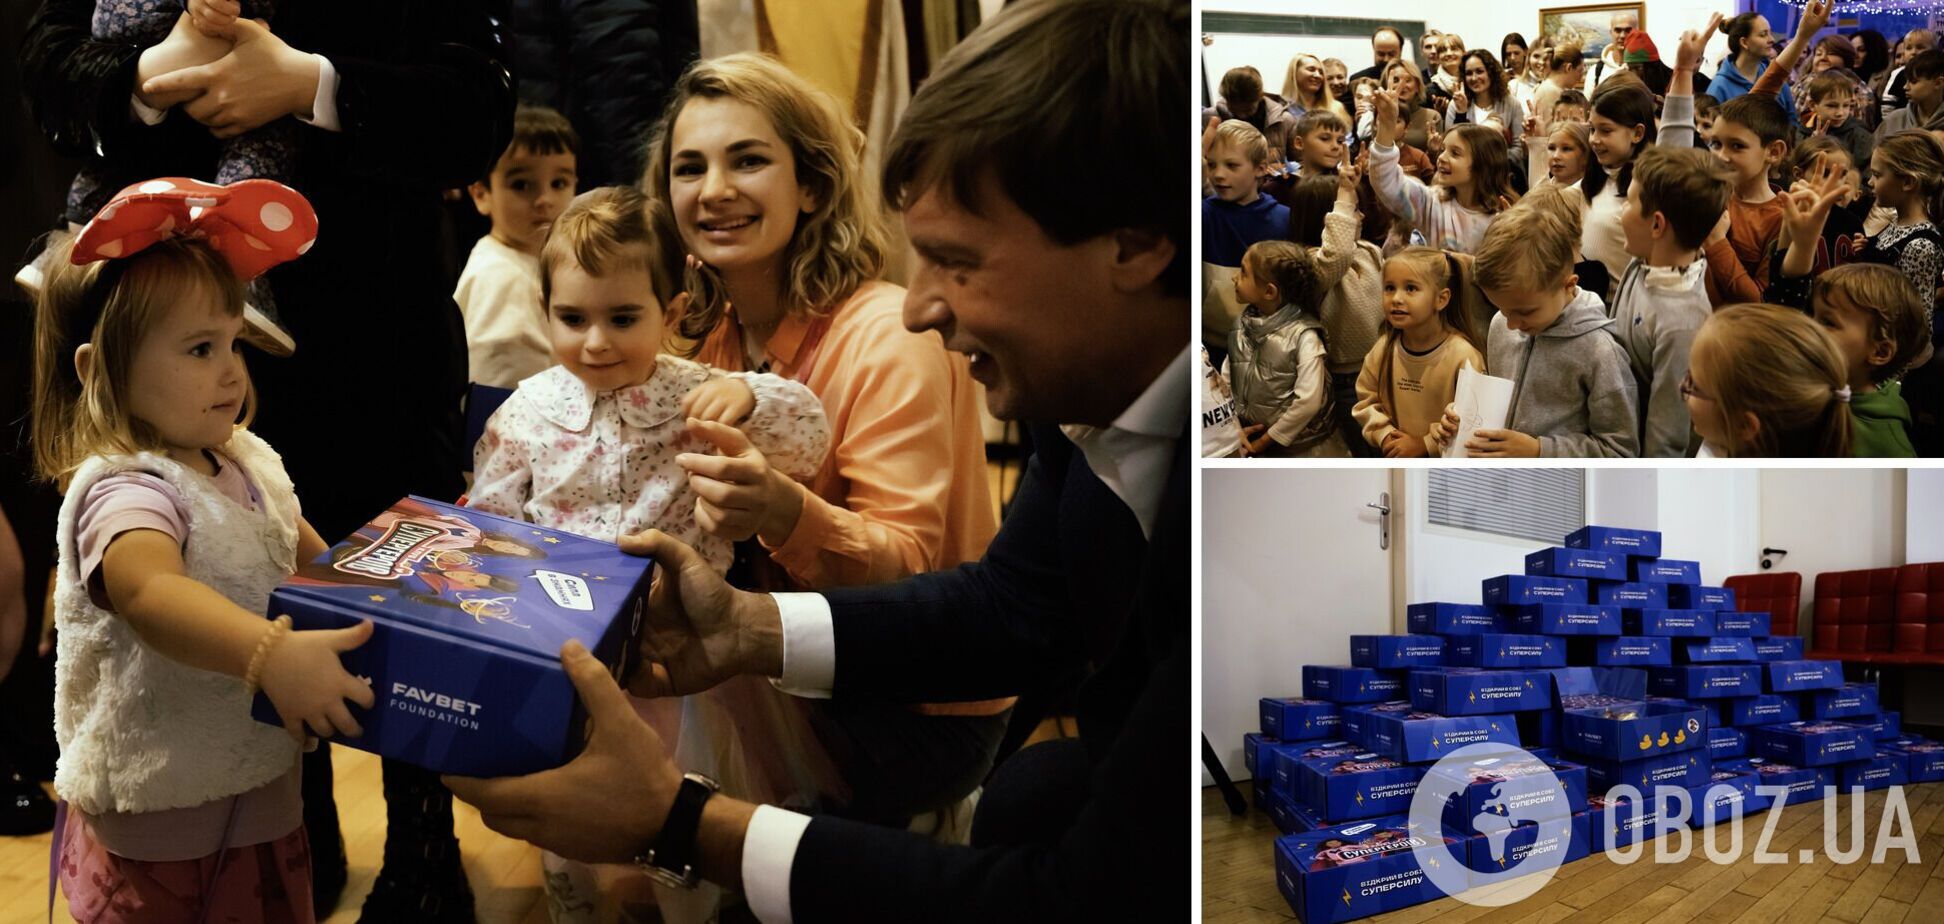 В Загребе устроили рождественские праздники для украинских детей при поддержке президента Favbet Foundation Андрея Матюхи